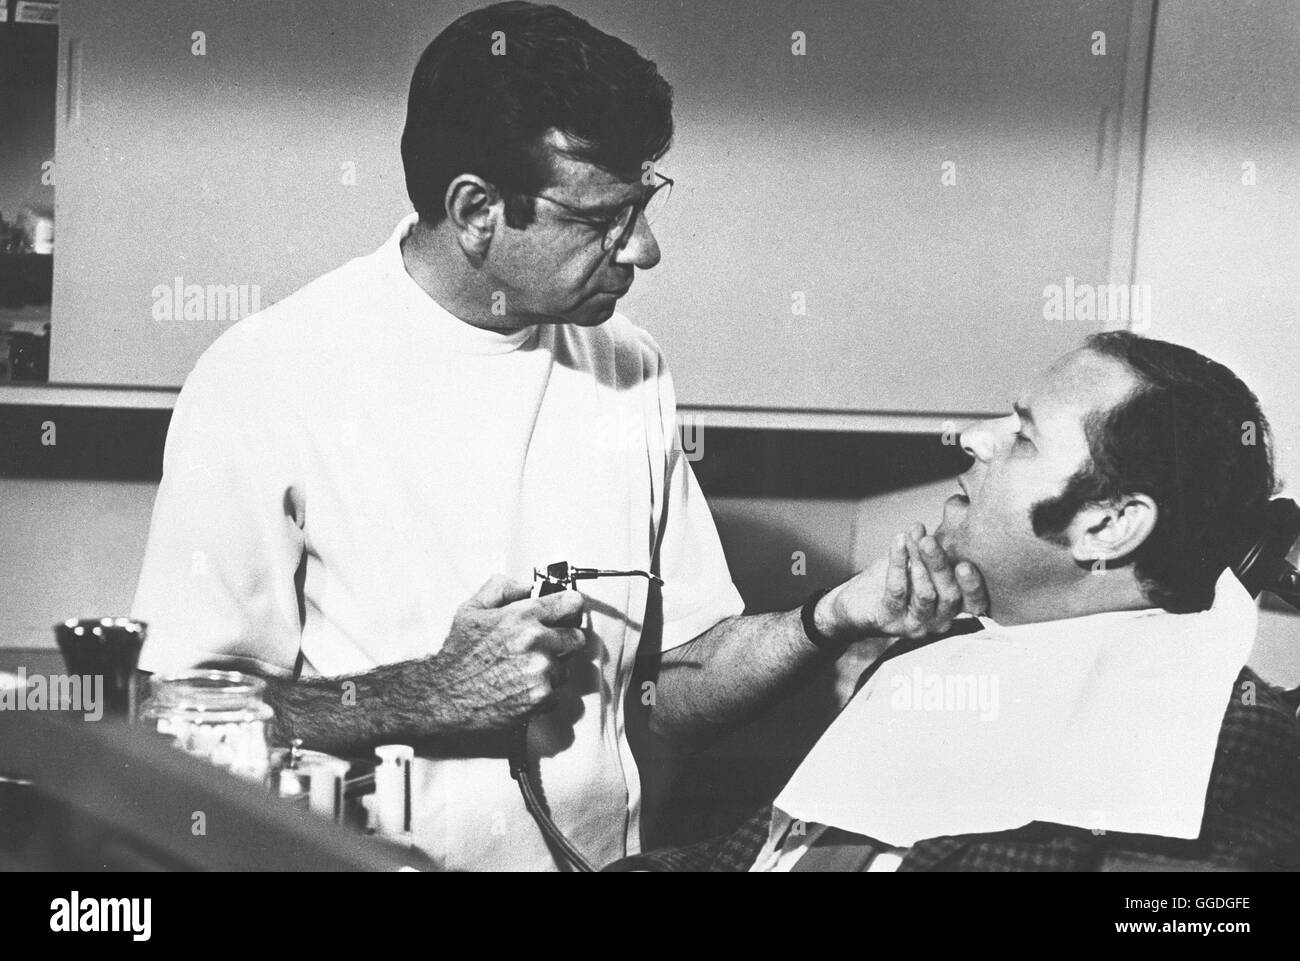 DIE KAKTUSBLÜTE / Cactus Flower USA 1969 / Gene Saks WALTER MATTHAU als Zahnarzt Julian Winston, mit Patient, in 'Cactus Flower', 1969 Regie: Gene Saks aka. Cactus Flower Stock Photo